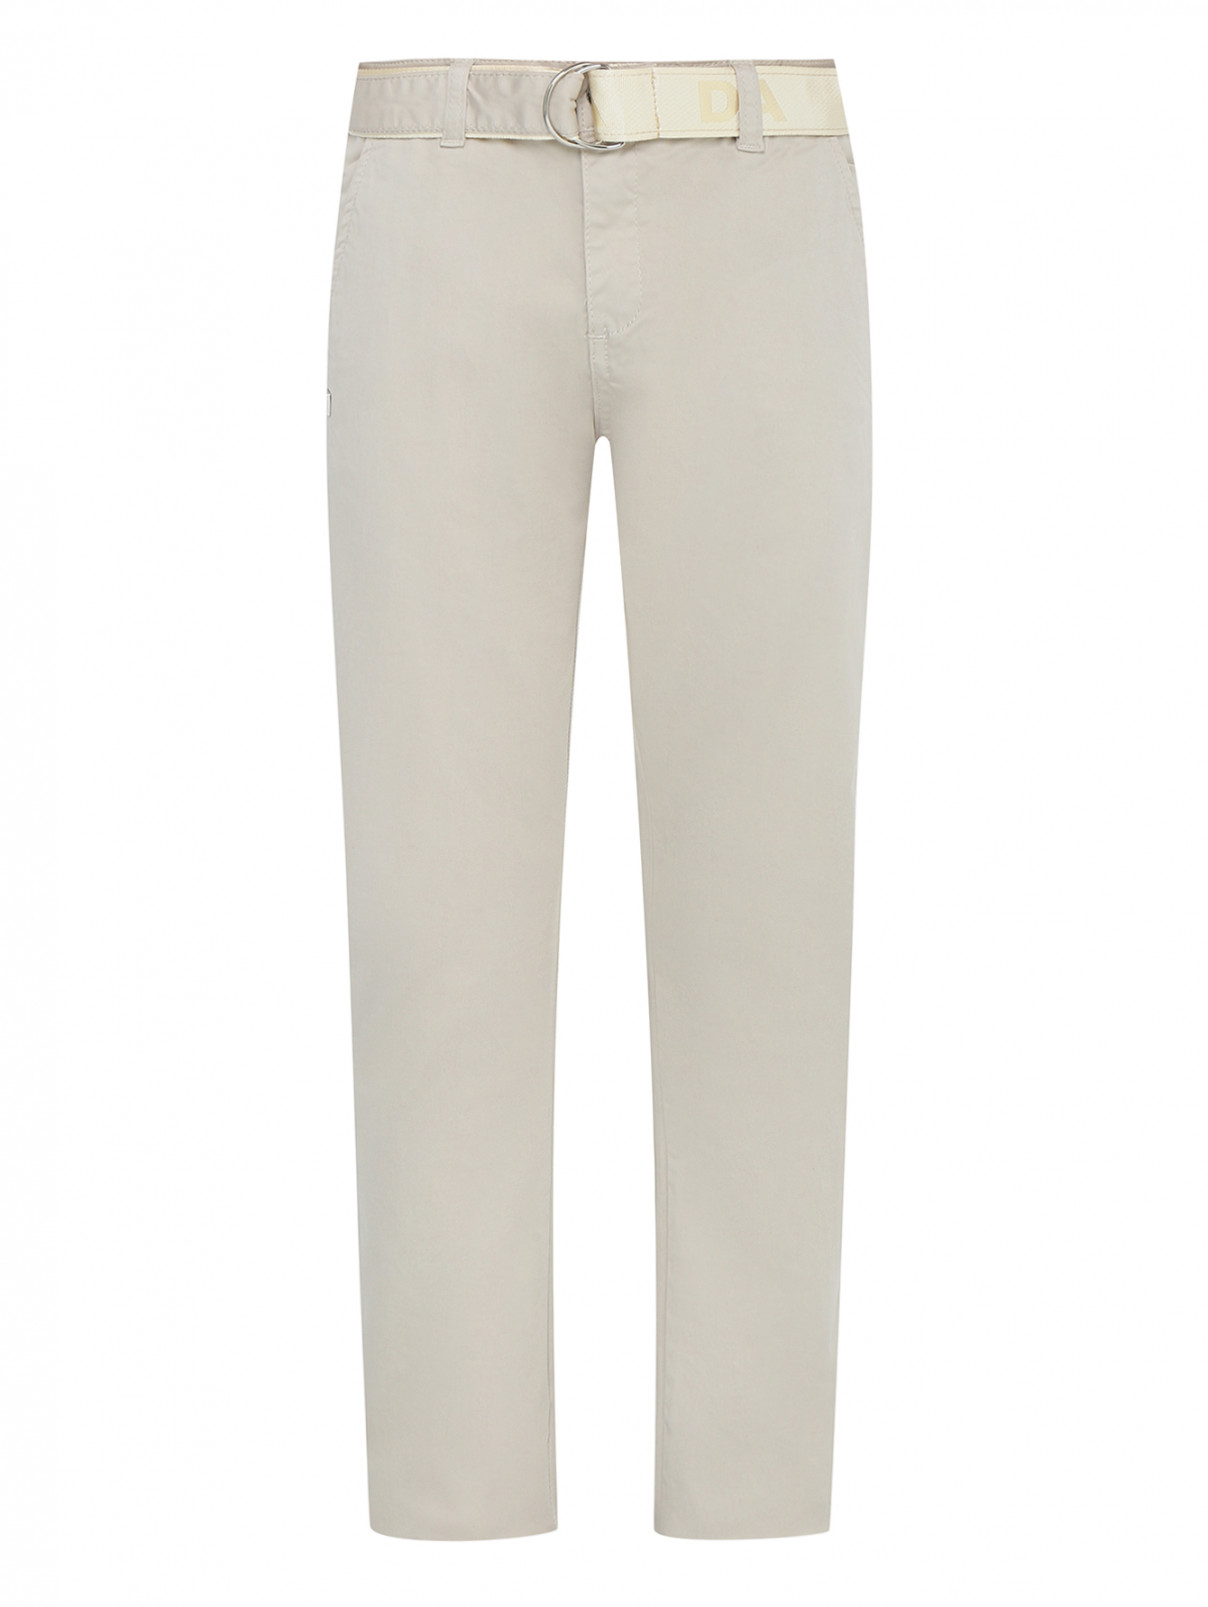 Хлопковые брюки с поясом Daniele Alessandrini  –  Общий вид  – Цвет:  Бежевый